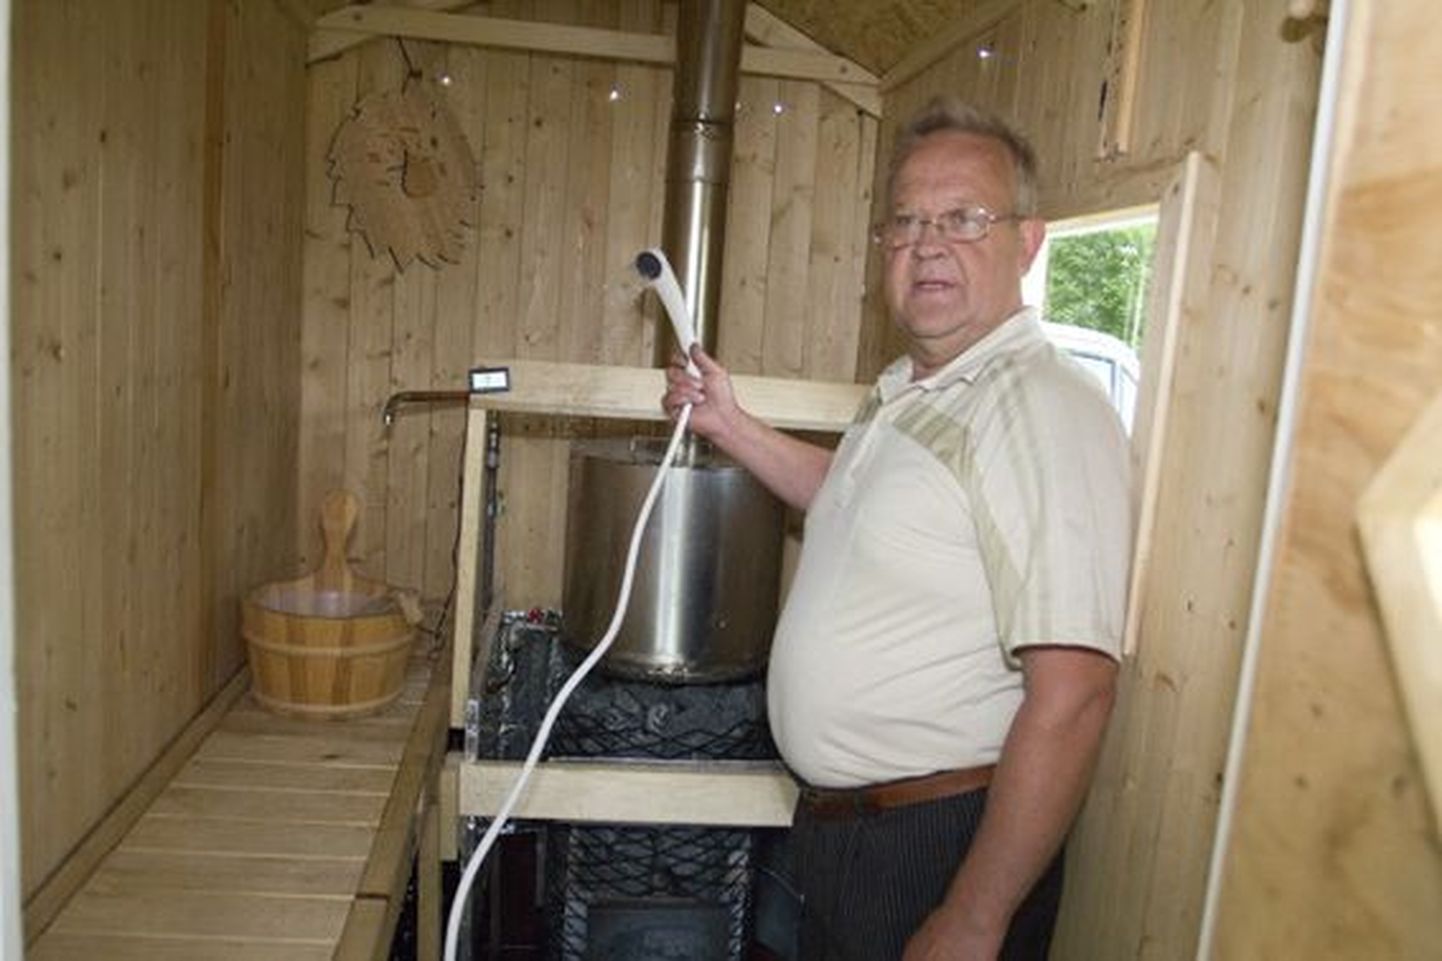 Ants Allikmaa tutvustab oma kätega meisterdatud sauna, mis valmis septembri ja mai vahel.